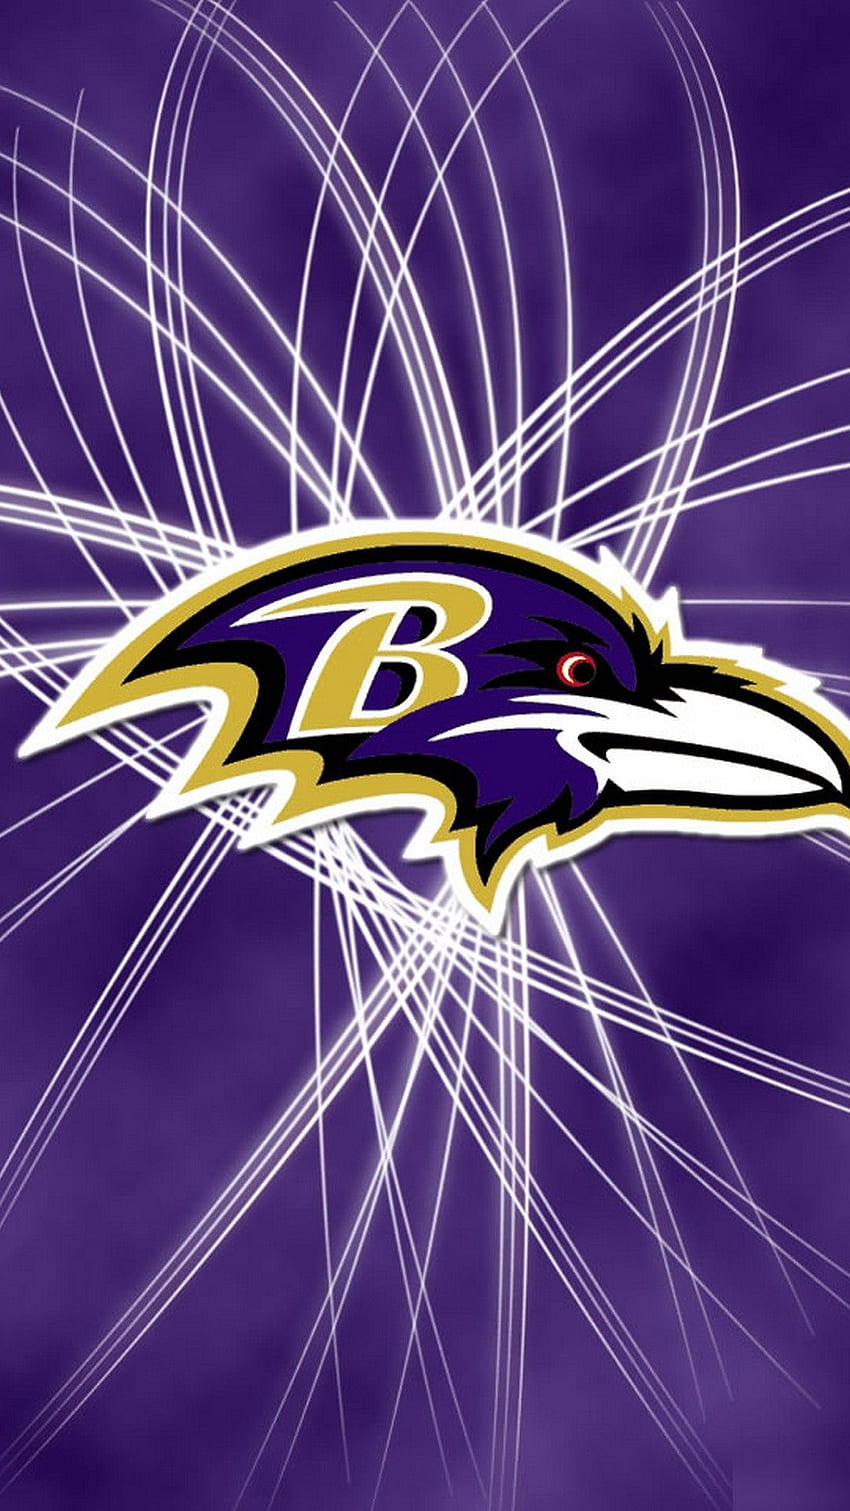 Baltimore Ravens iPhone Screensaver - 2021 NFL iPhone HD phone wallpaper